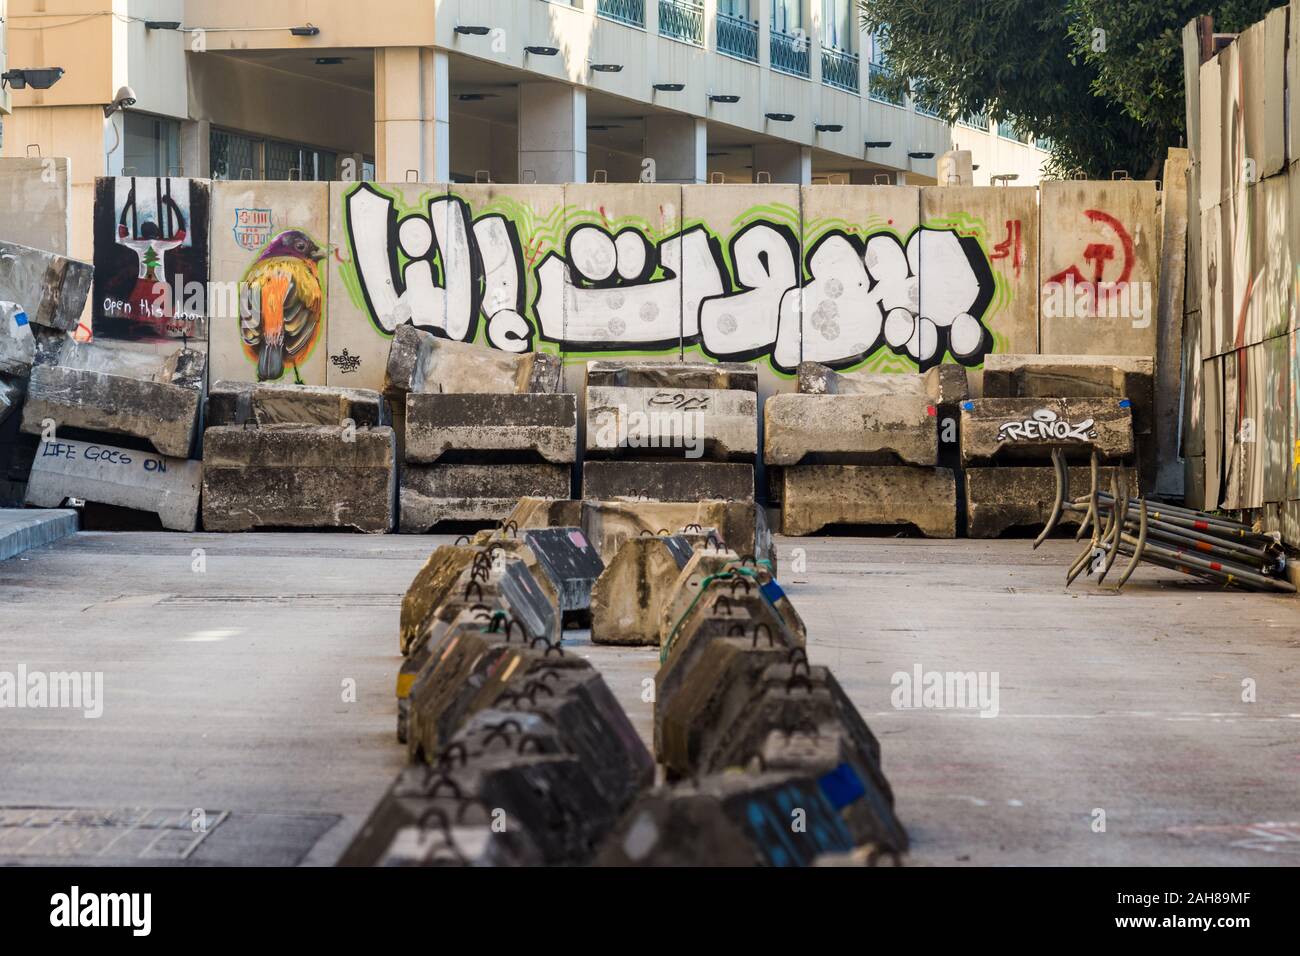 Graffiti, die sagt: "Beirut ist Unsere' auf eine Barrikade während der Proteste 2019 Libanon, Beirut, Libanon geschrieben Stockfoto